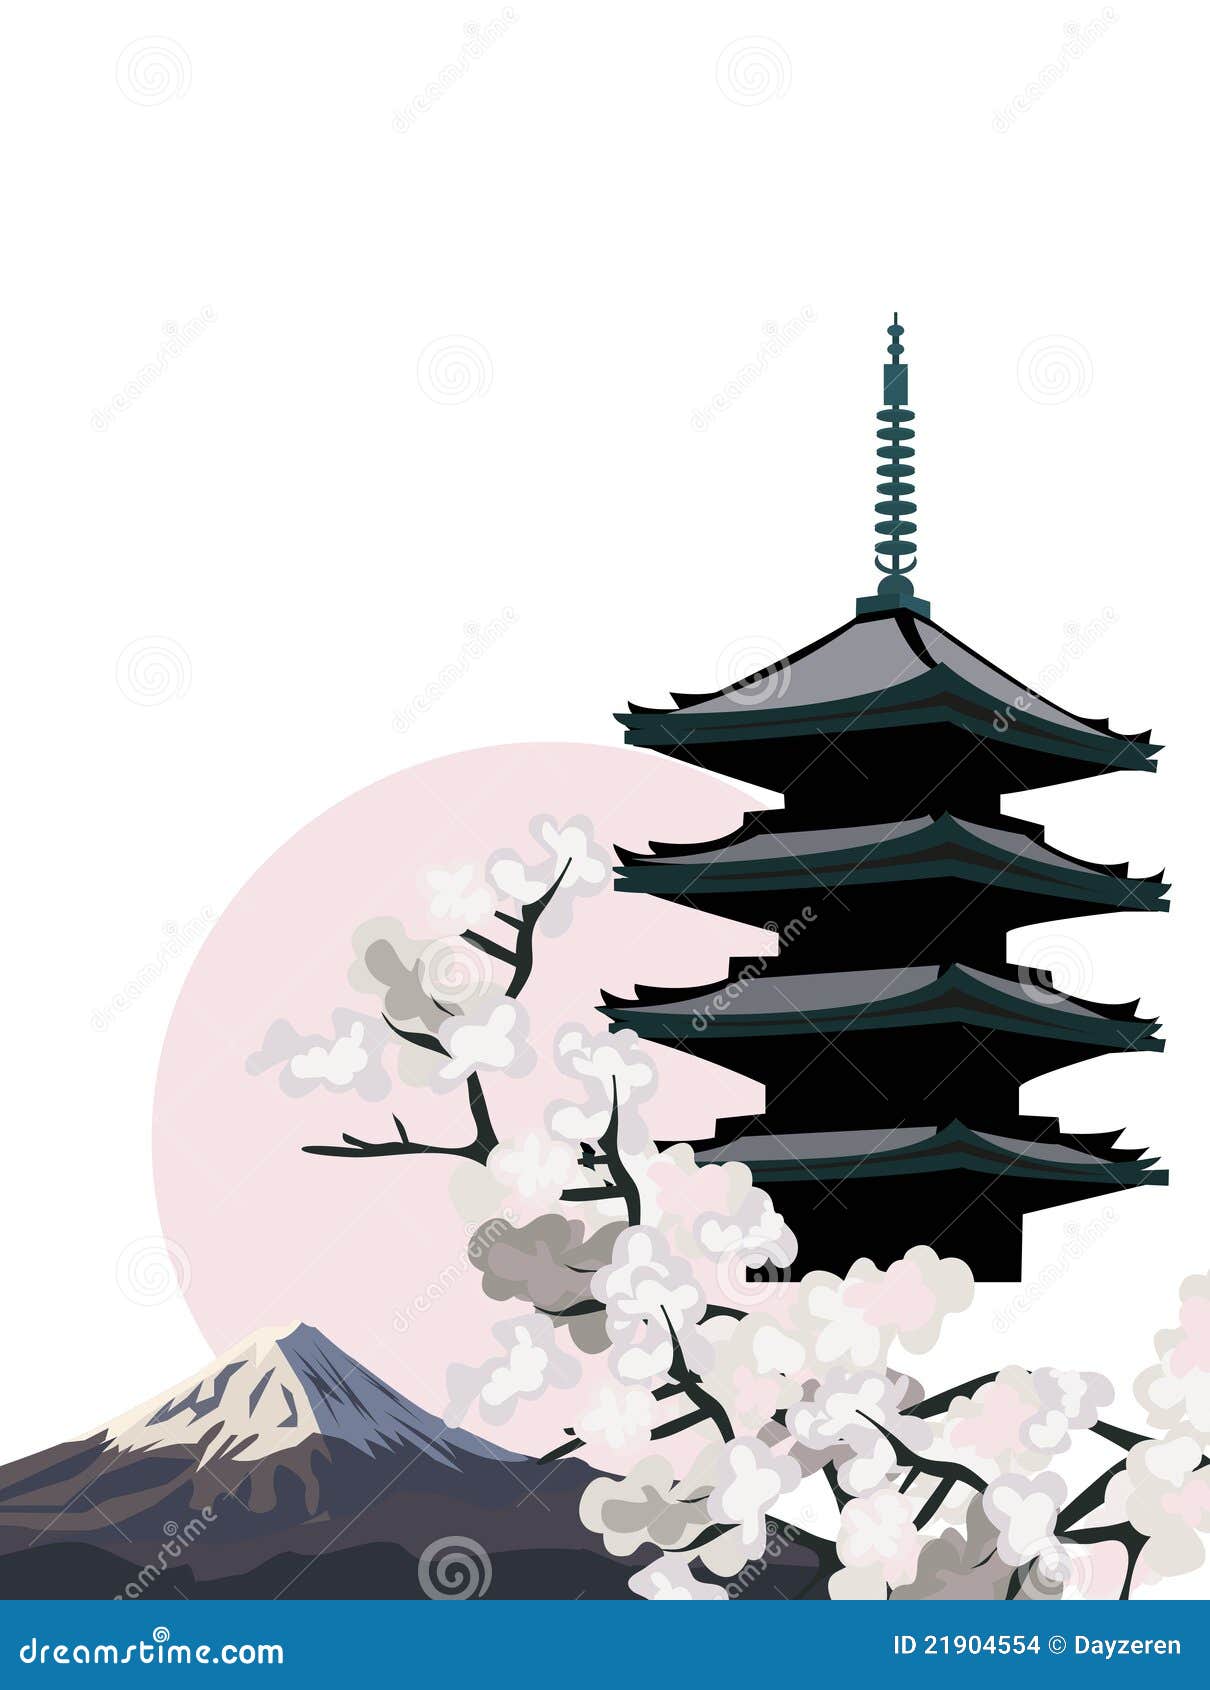 Japanese Pagoda Stock Images - Image: 21904554